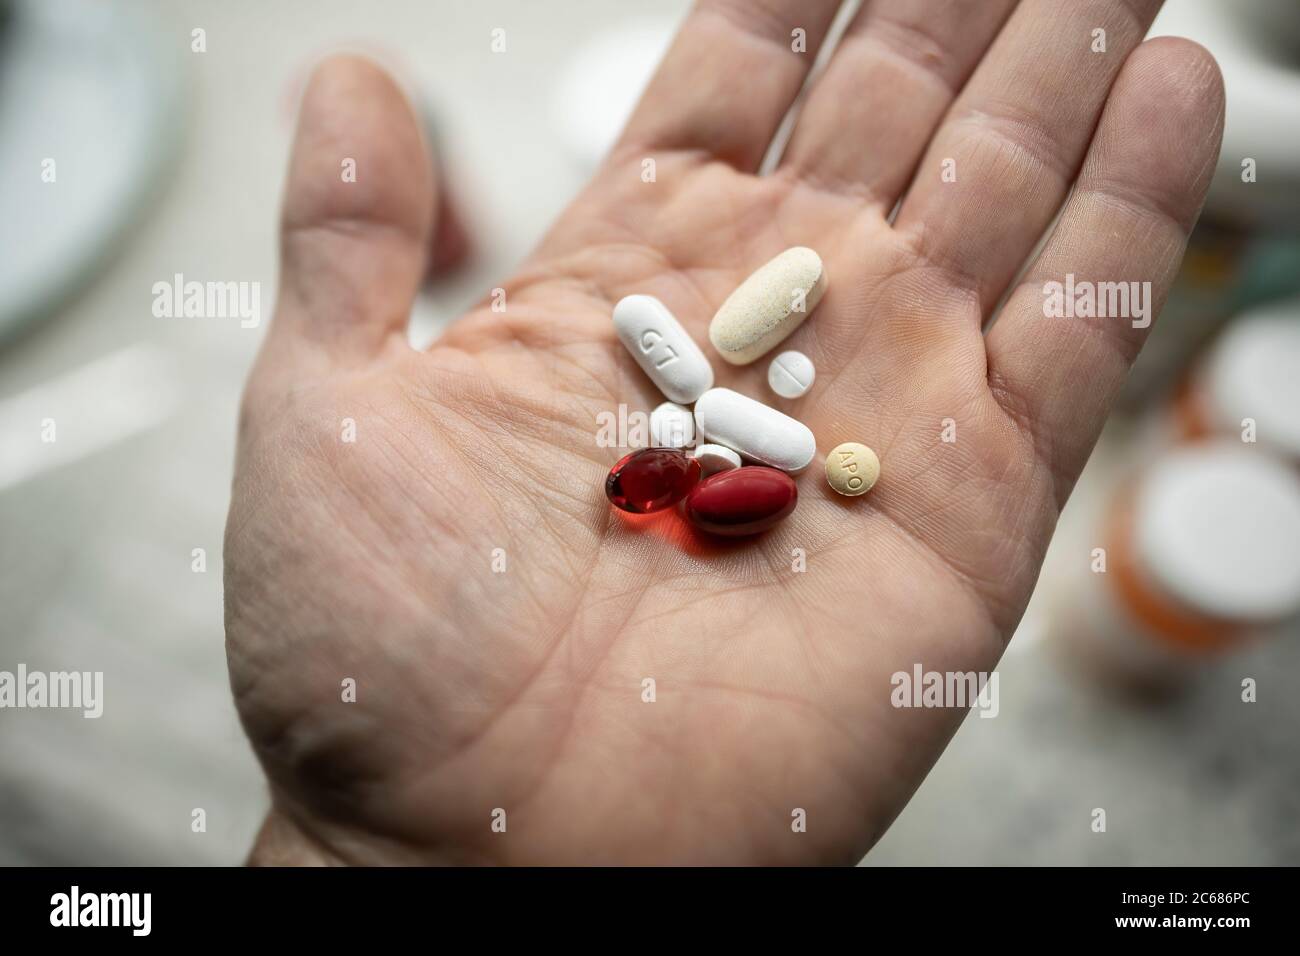 Mano masculina sosteniendo una variedad de vitaminas y píldoras de prescripción Foto de stock